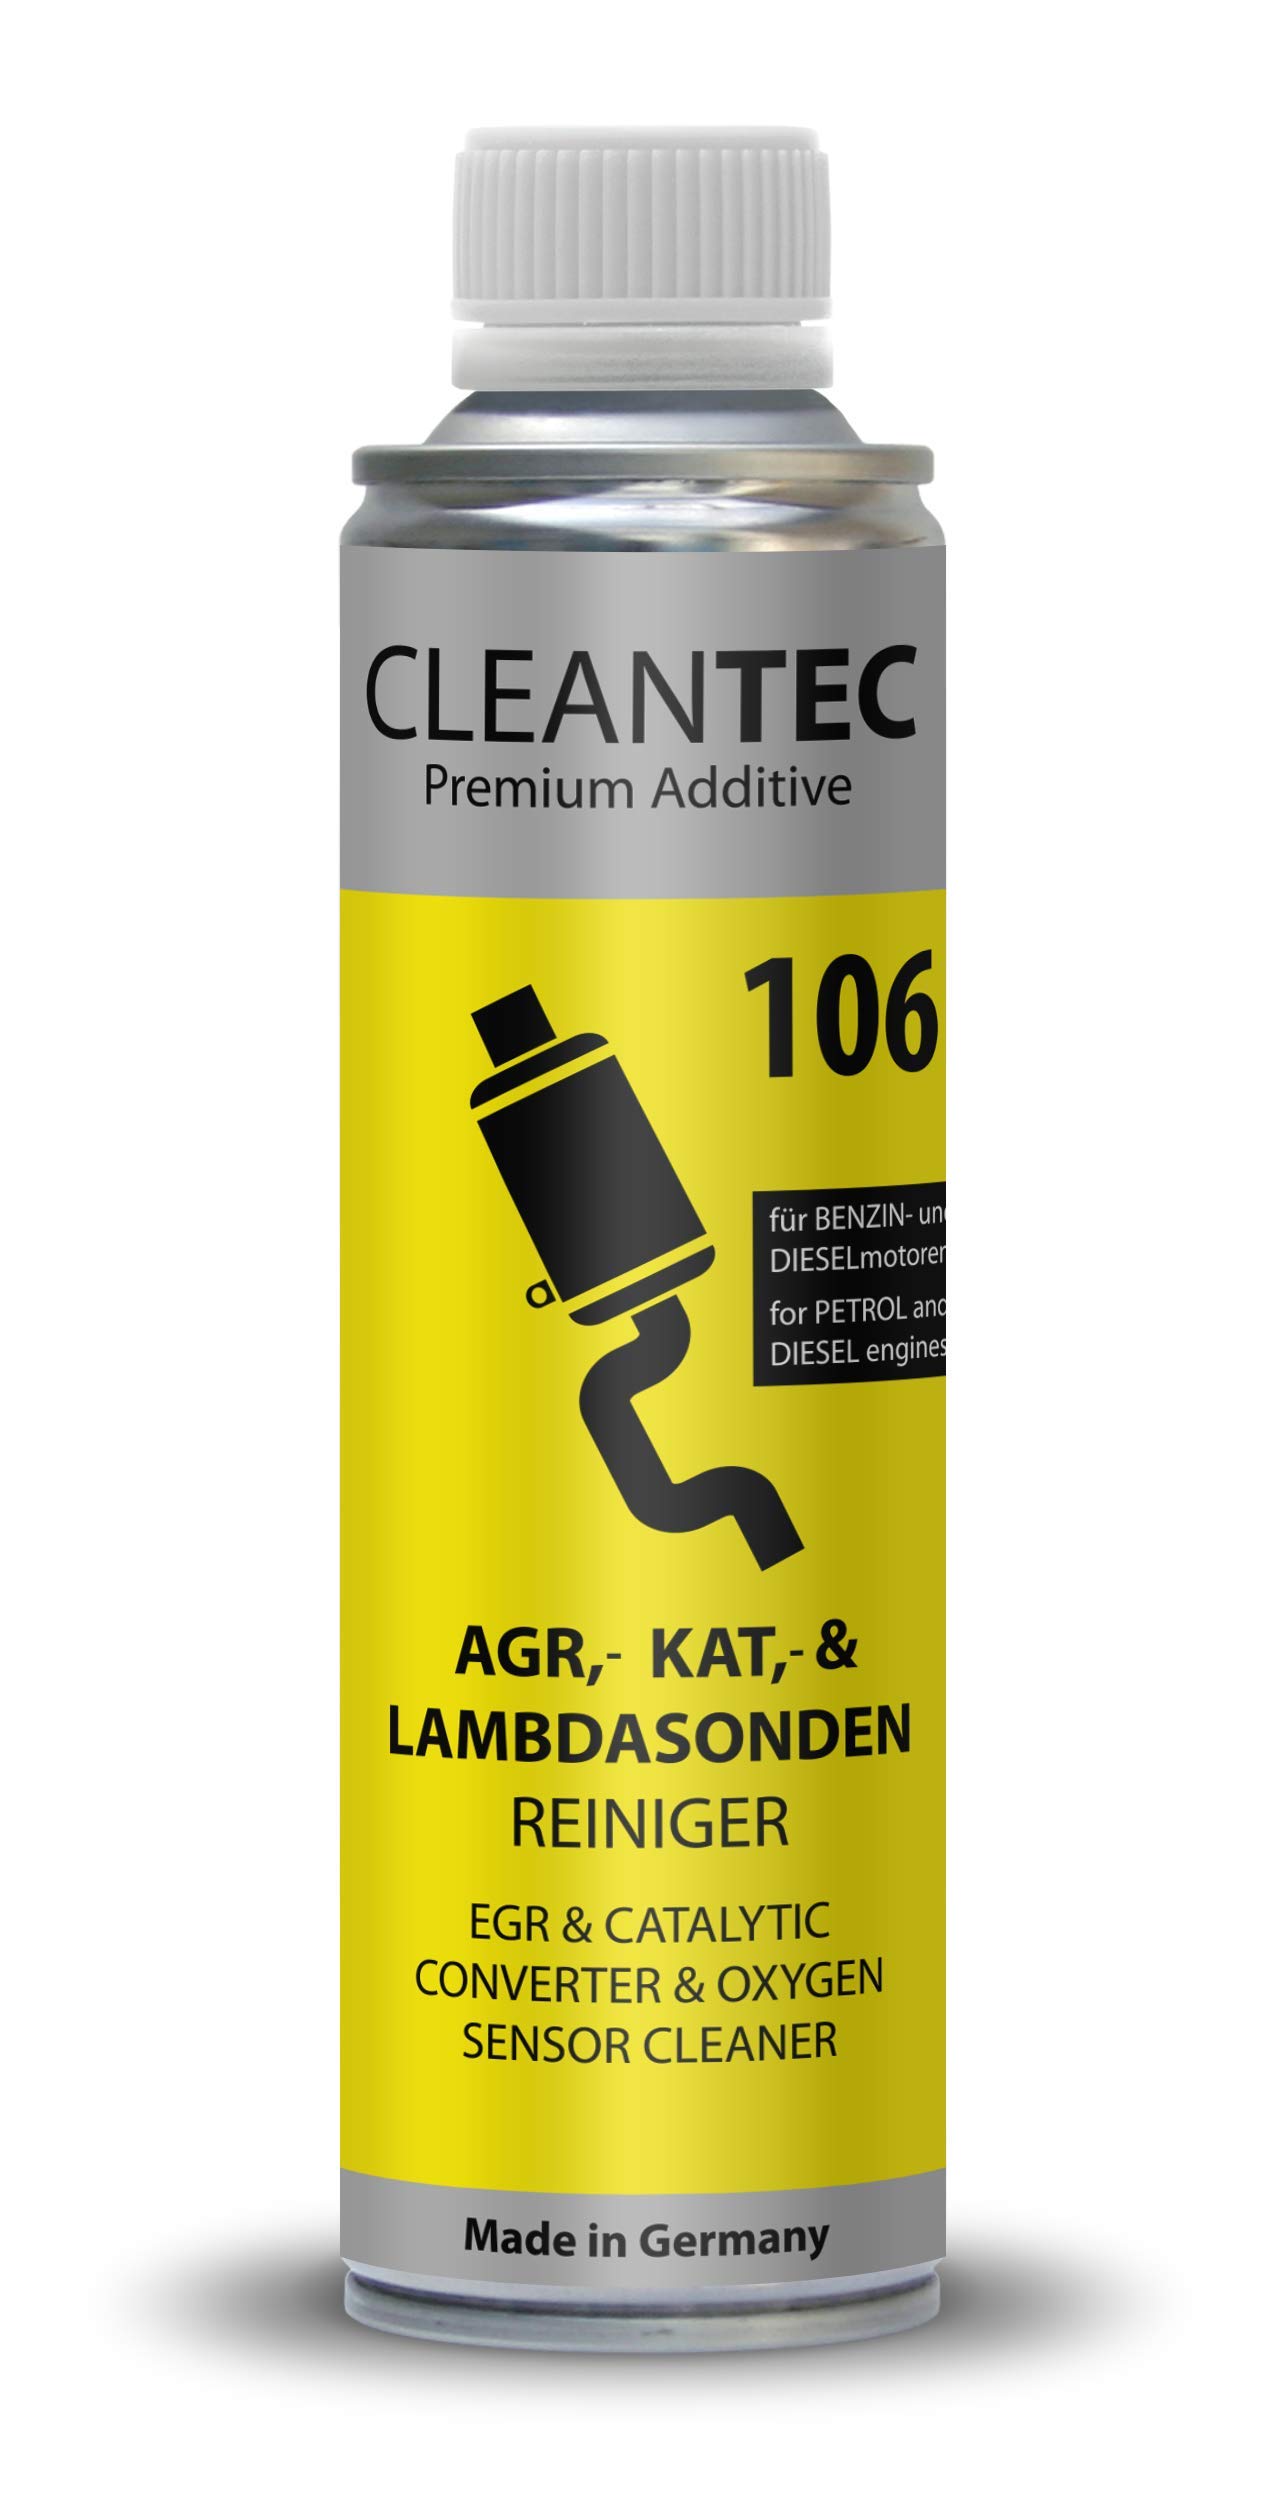 CleanTEC 106 Innovativer Oxicat, Kat, Lambdasonden, Katalysator, AGR Ventil, EGR, Turbo Reiniger Additiv 300ml für Diesel und Benzin Fahrzeuge geeignet (1) von cms CleanTEC GmbH